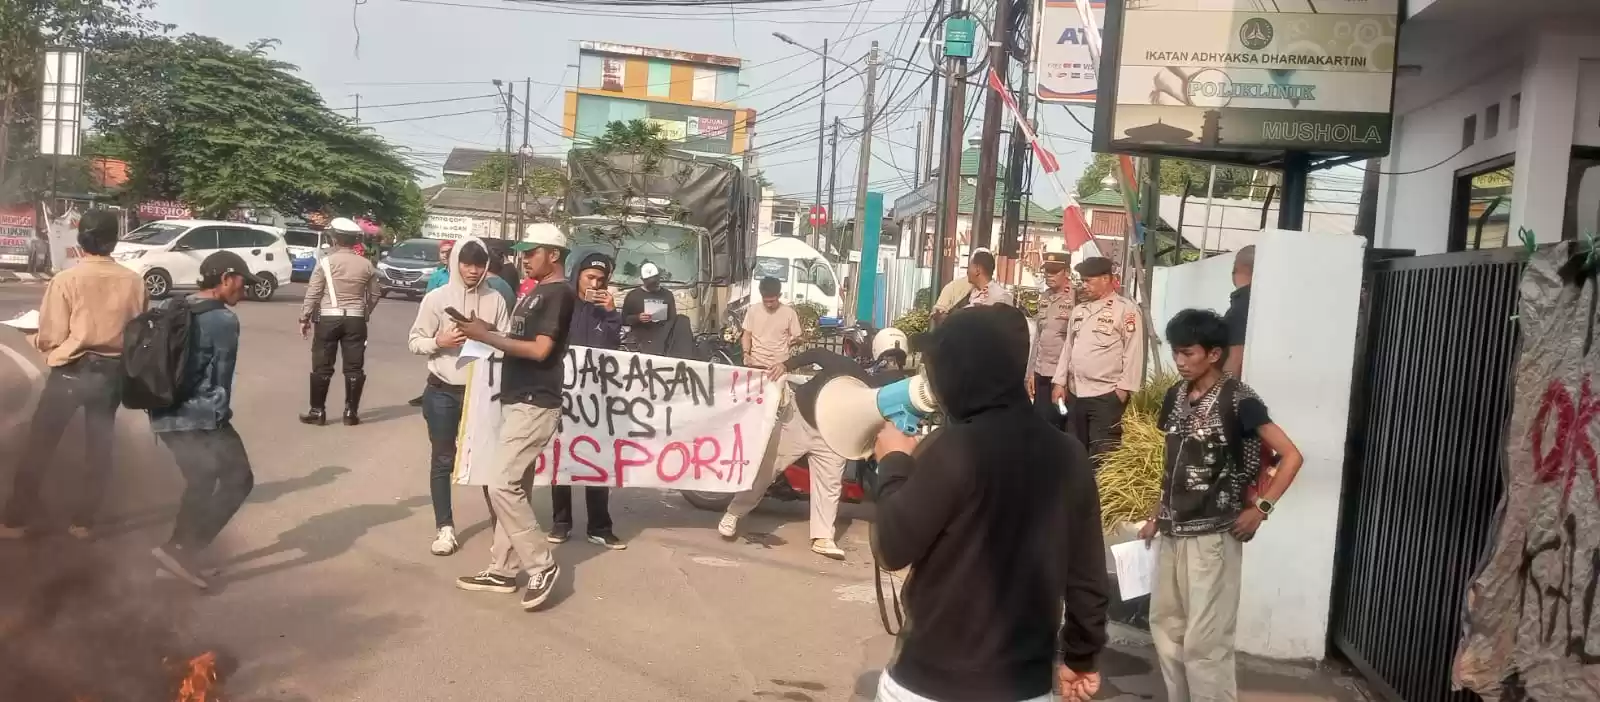 Aksi Demo di Depan Gedung Kejari Kota Bekasi Dikawal Aparat Kepolisian (Foto/MI)